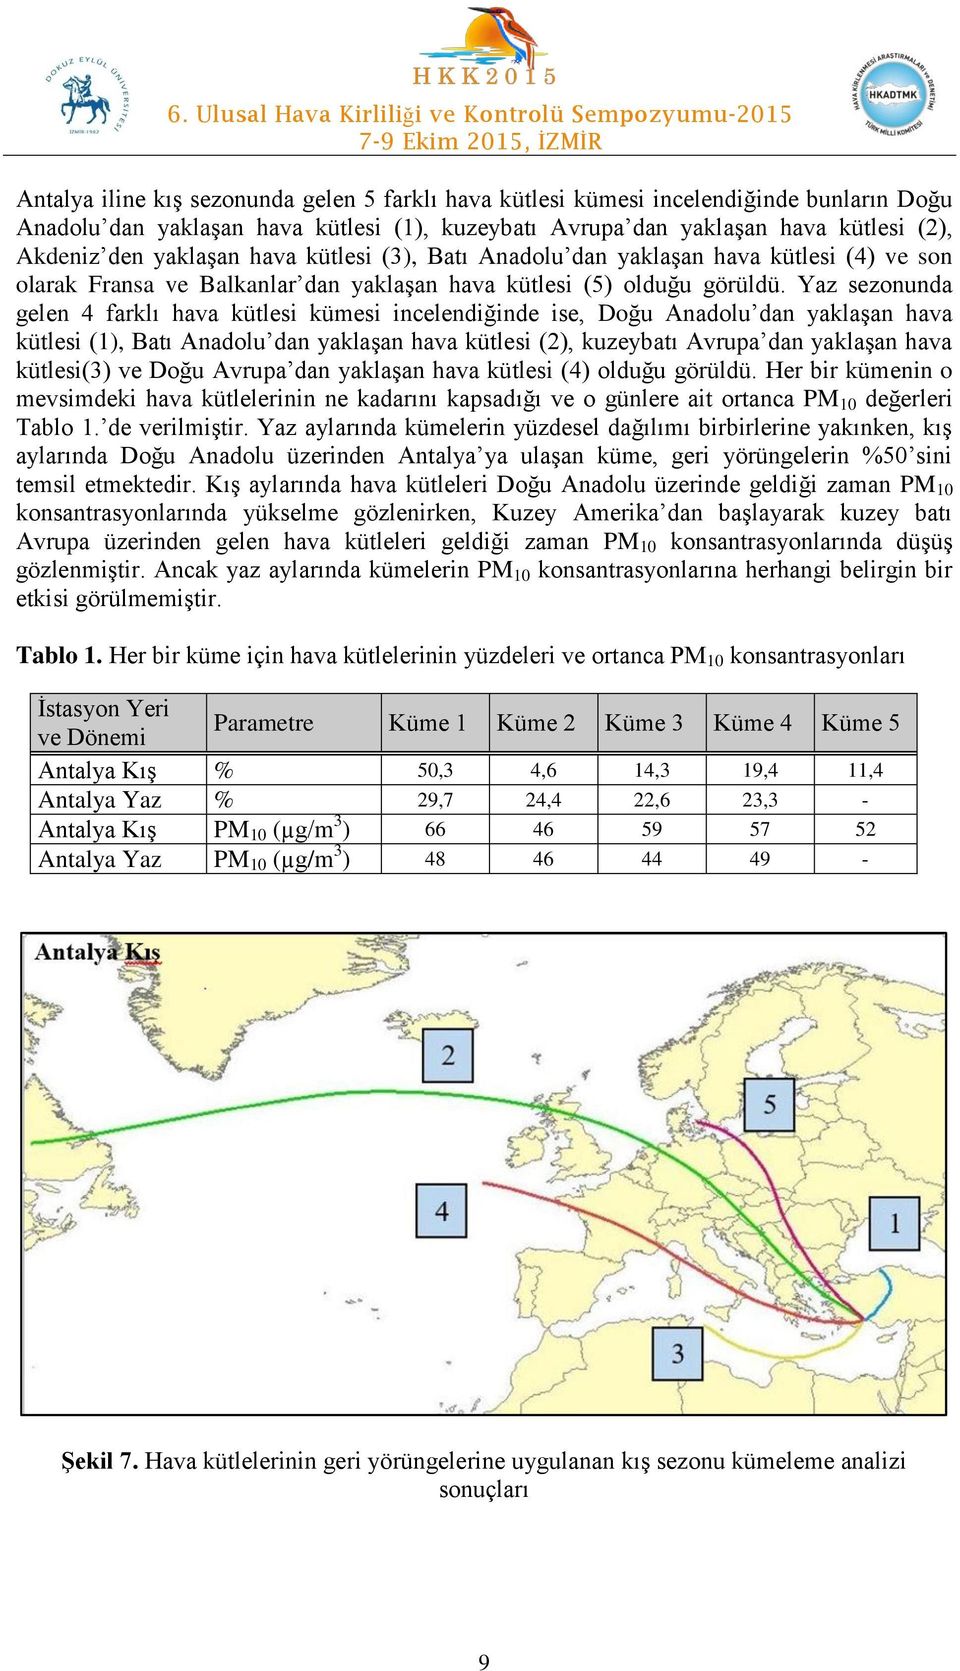 Yaz sezonunda gelen 4 farklı hava kütlesi kümesi incelendiğinde ise, Doğu Anadolu dan yaklaşan hava kütlesi (1), Batı Anadolu dan yaklaşan hava kütlesi (2), kuzeybatı Avrupa dan yaklaşan hava